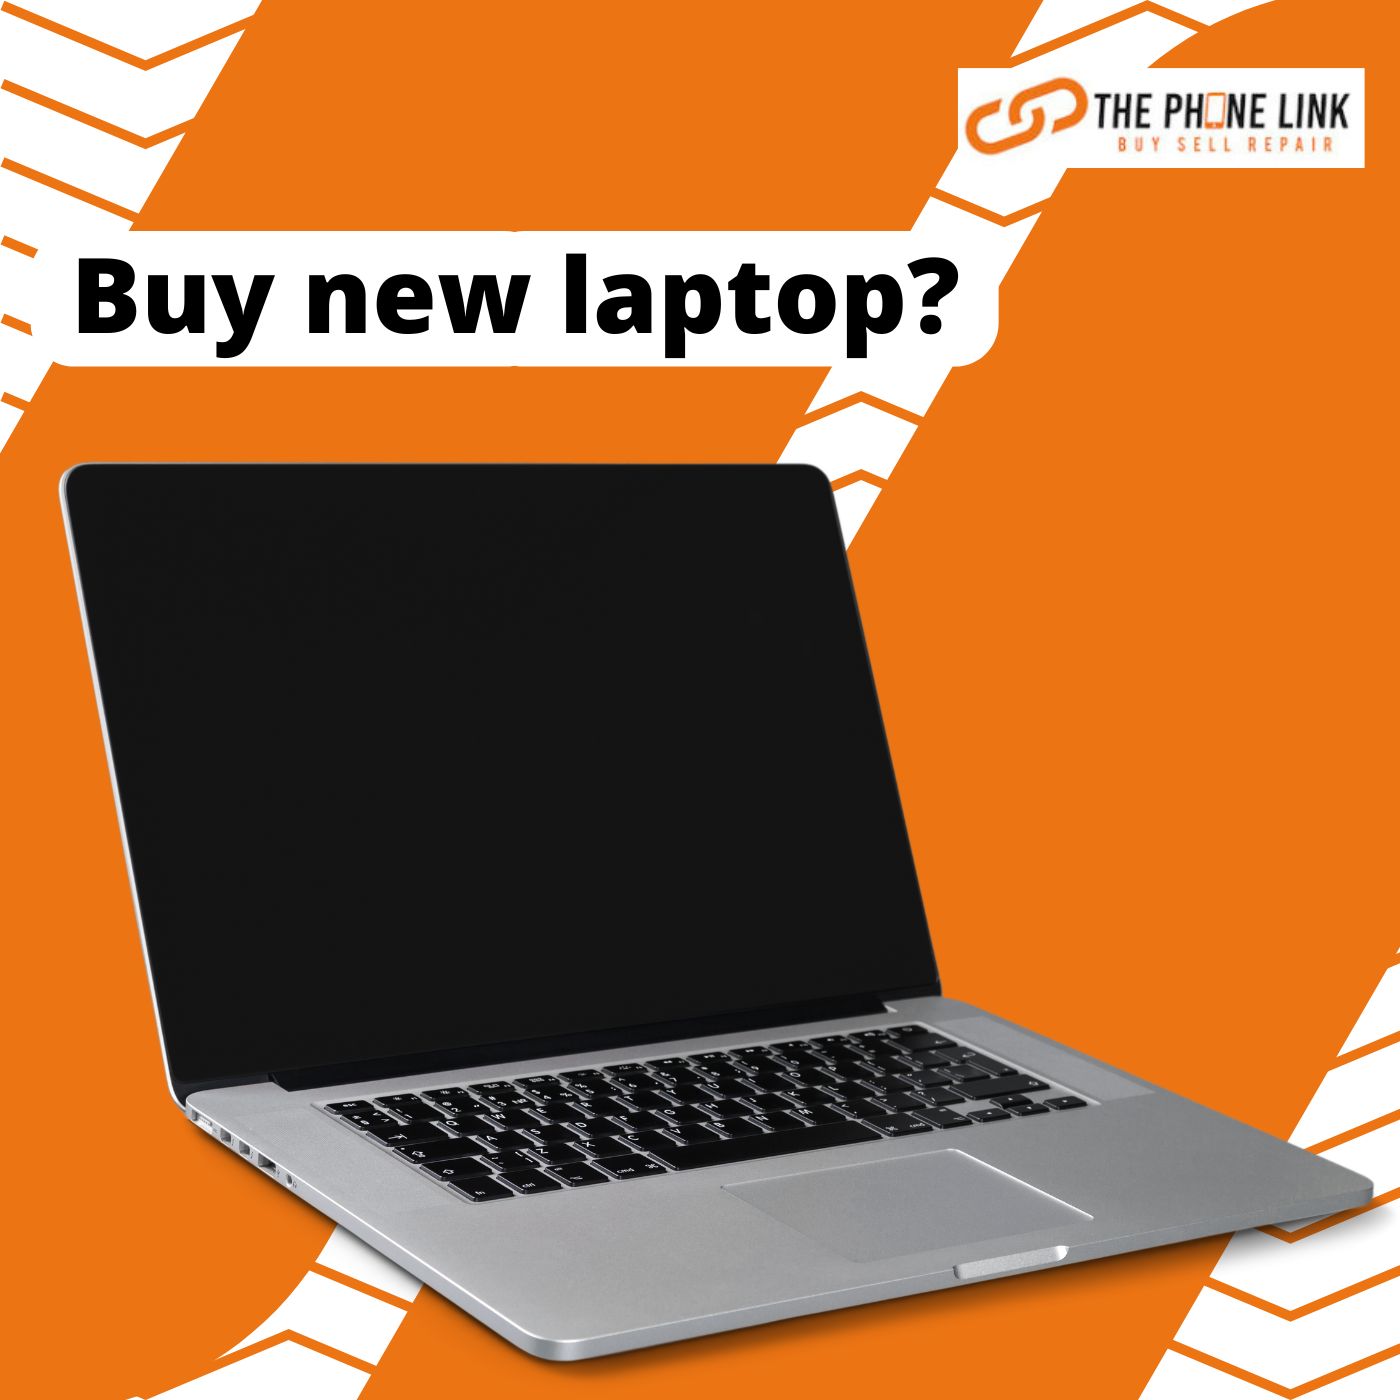 Buy new laptop